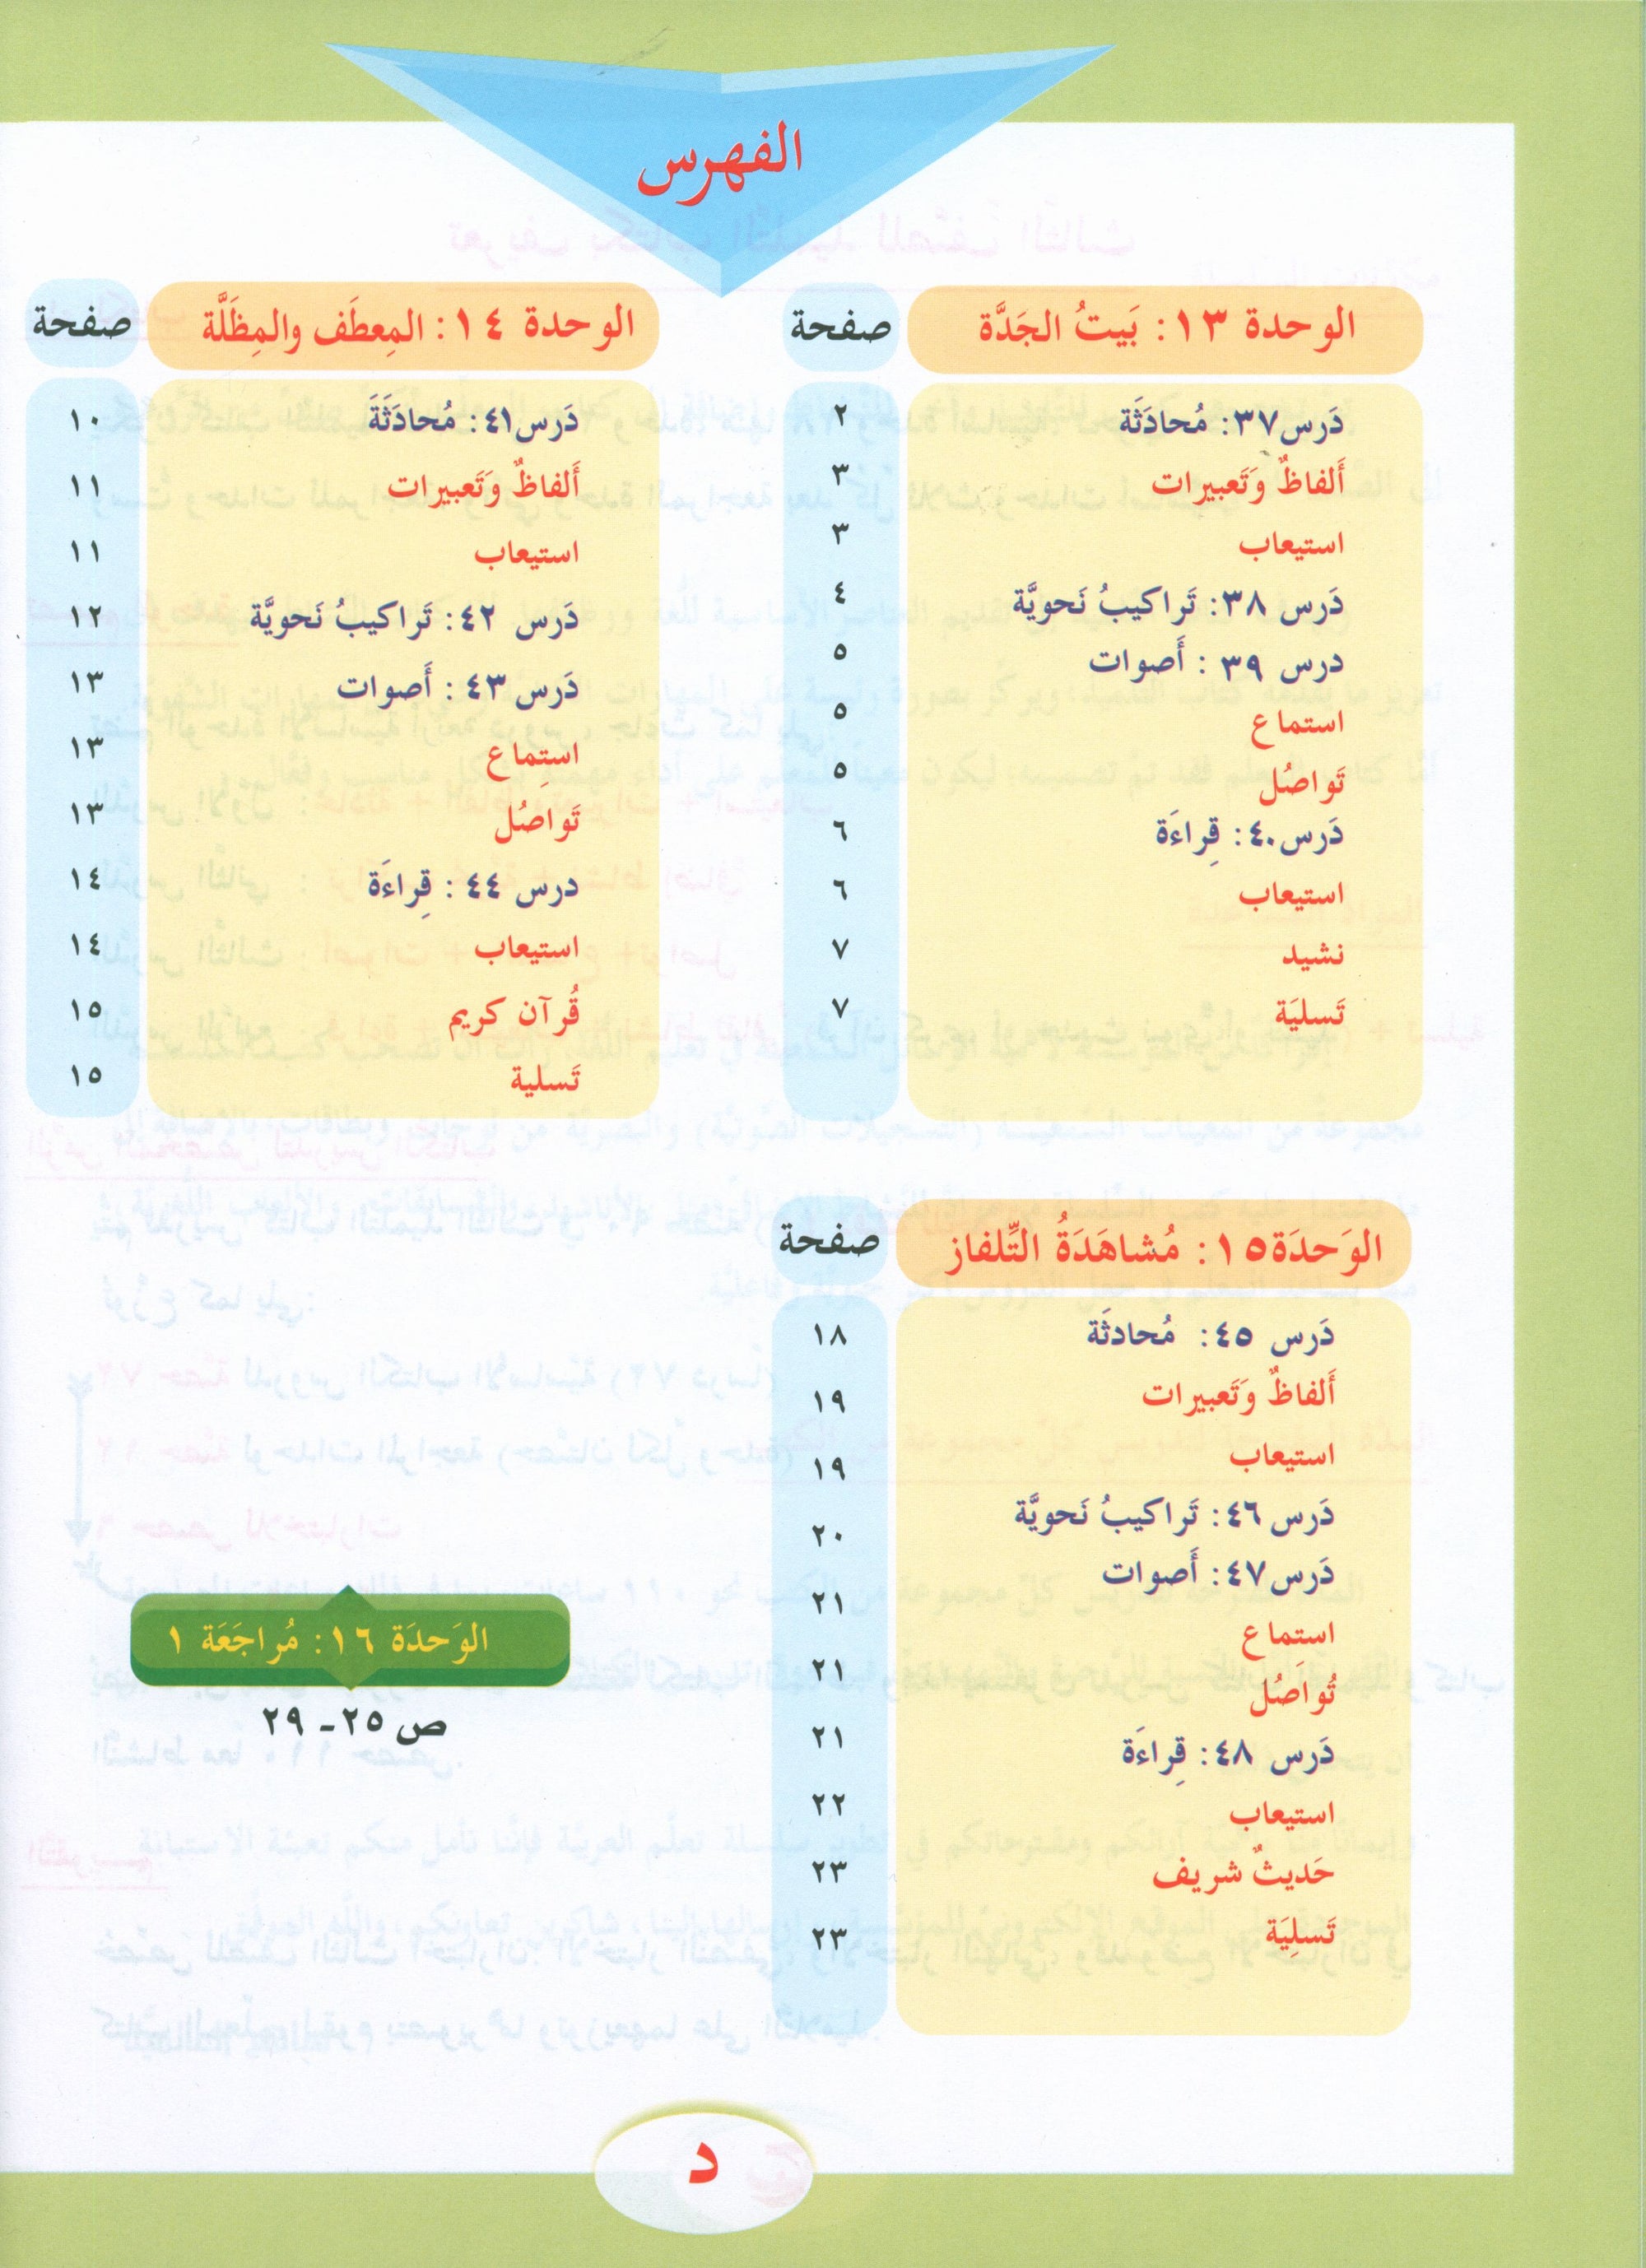 ICO Learn Arabic Textbook Level 3 Part 2 تعلم العربية كتاب التلميذ